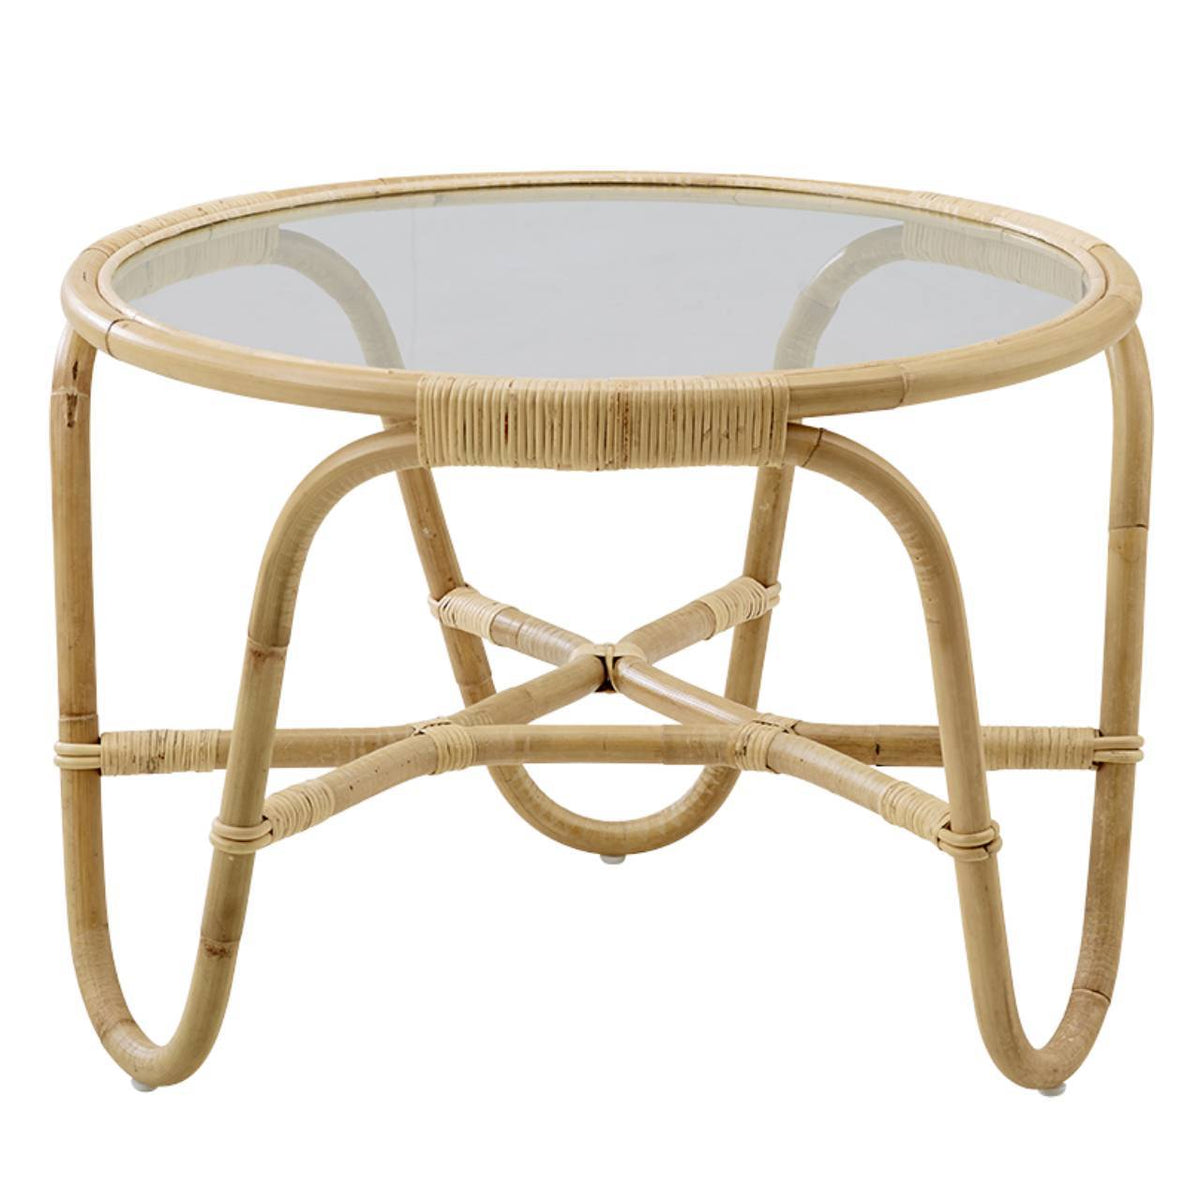 Arne Jacobsen Table Charlottenborg par Sika